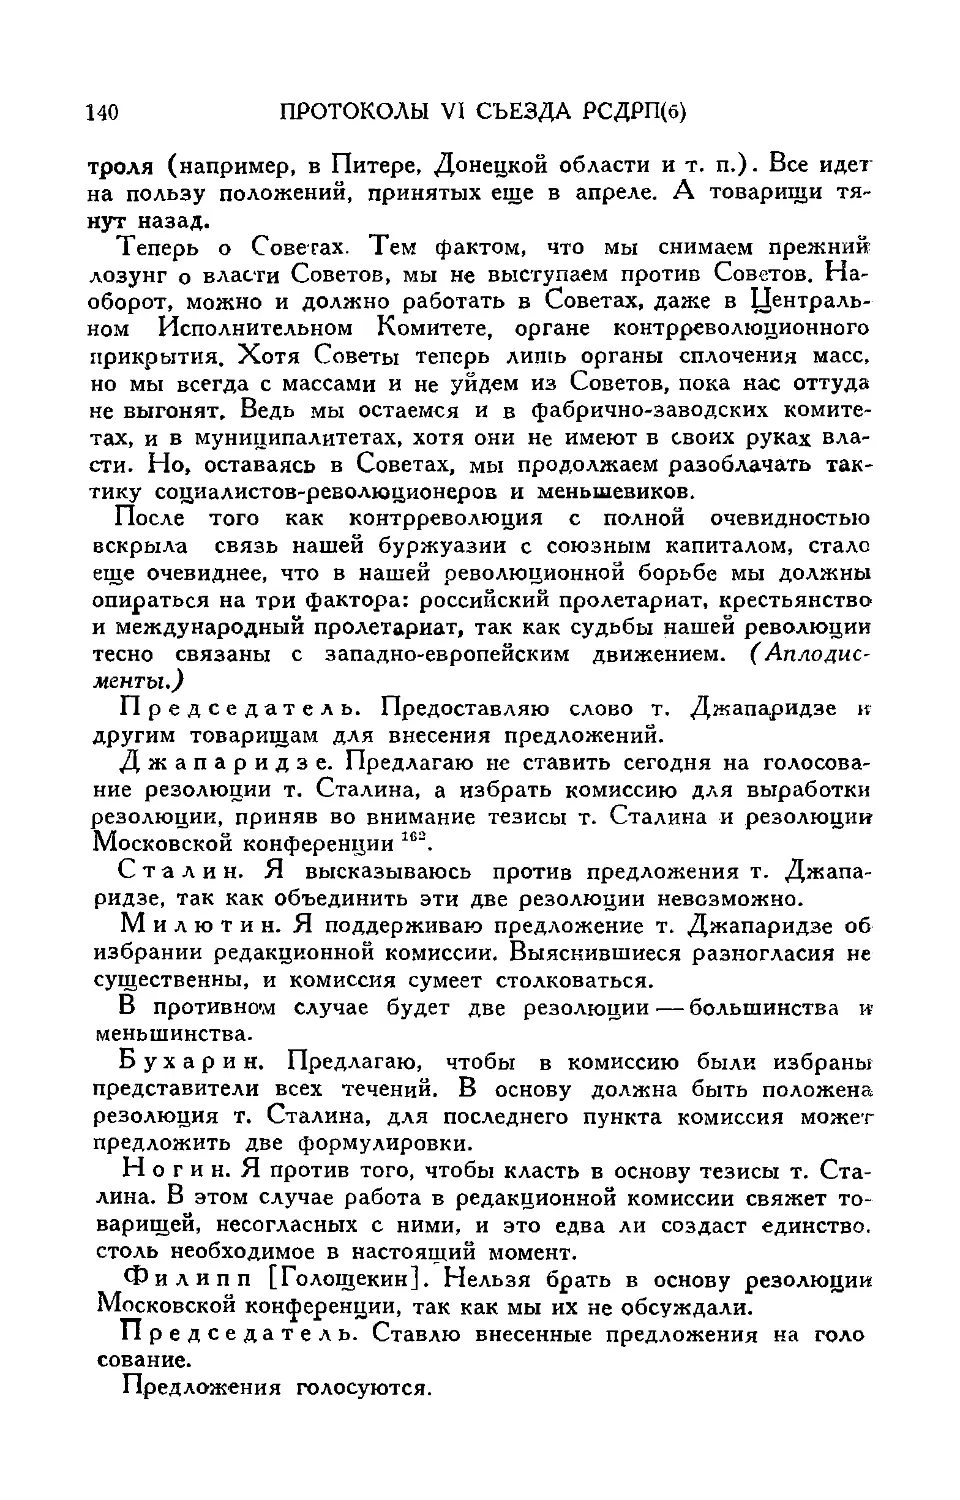 Выборы редакционной комиссии для выработки резолюции по докладу т. Сталина